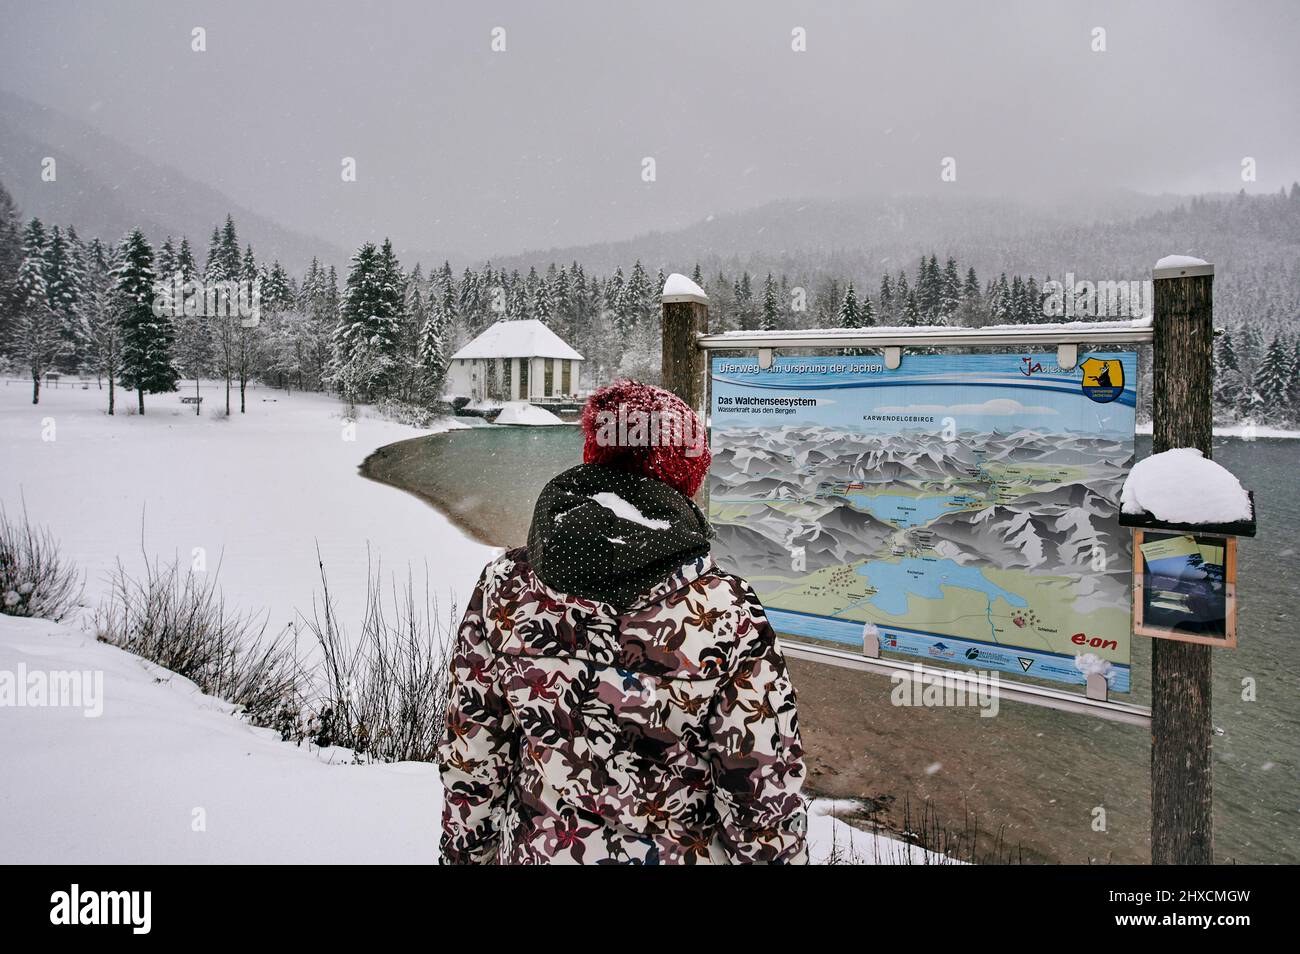 Paysage bavarois en hiver, Walchensee dans les contreforts des Alpes, touriste à l'office d'information sur le système Walchensee Banque D'Images